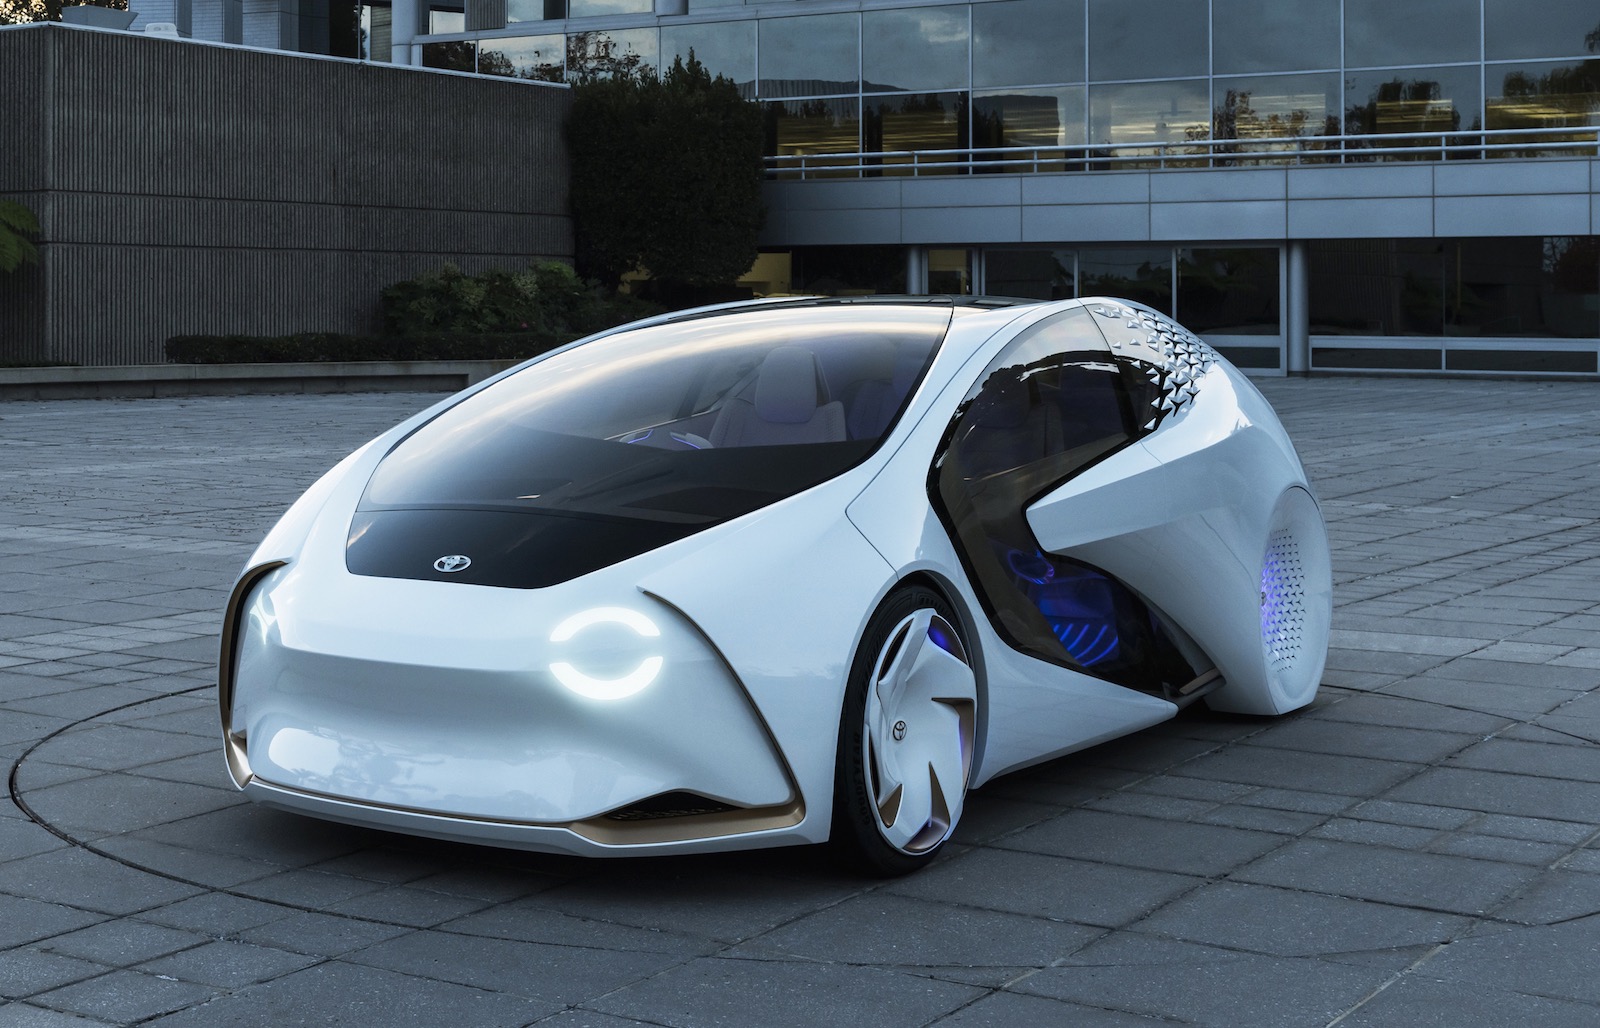 Toyota Concepti autonomous car unveiled at CES PerformanceDrive